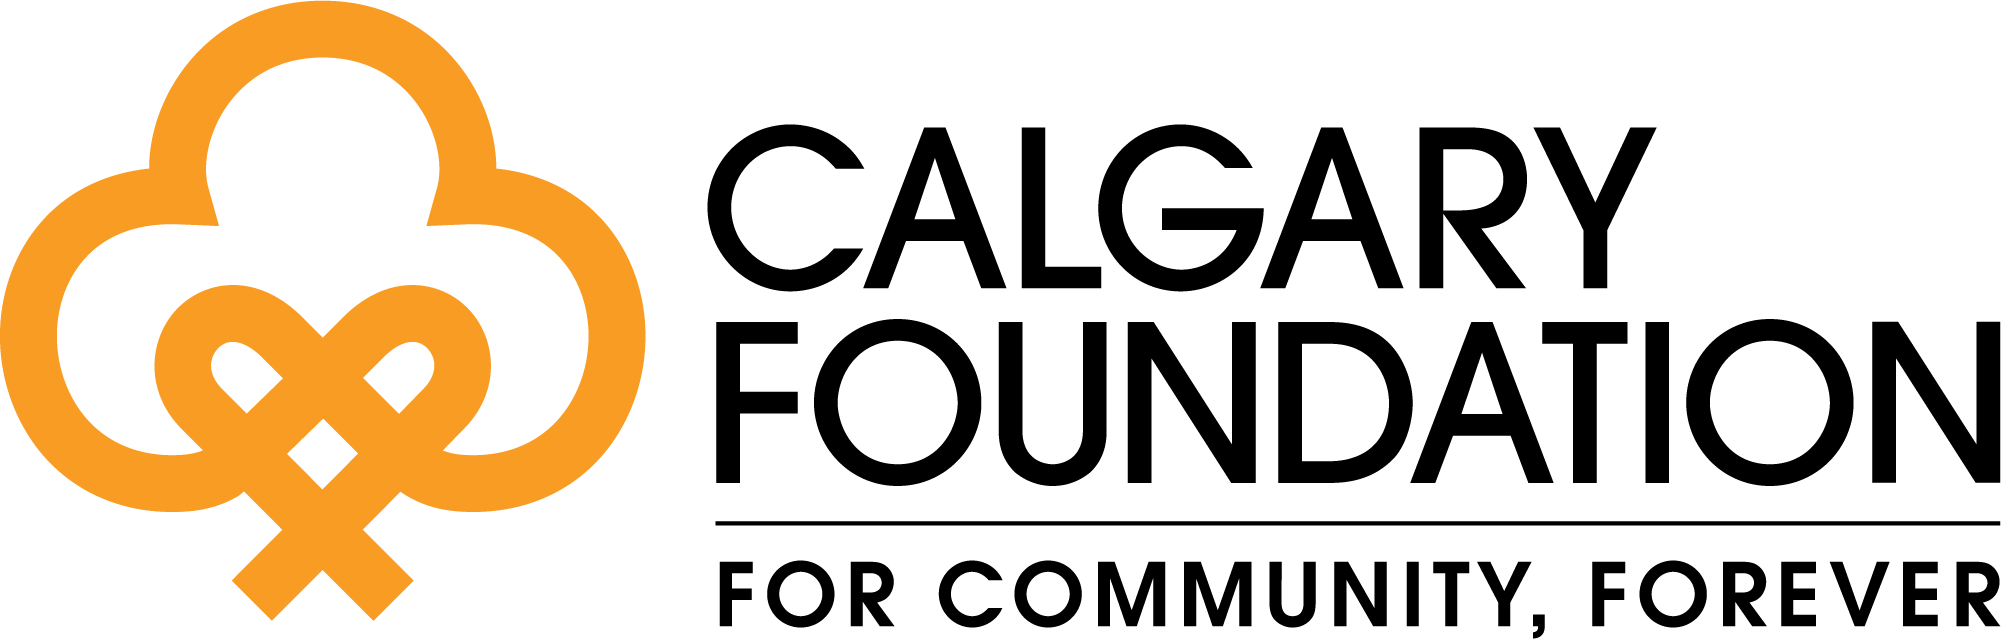 CF logo colour